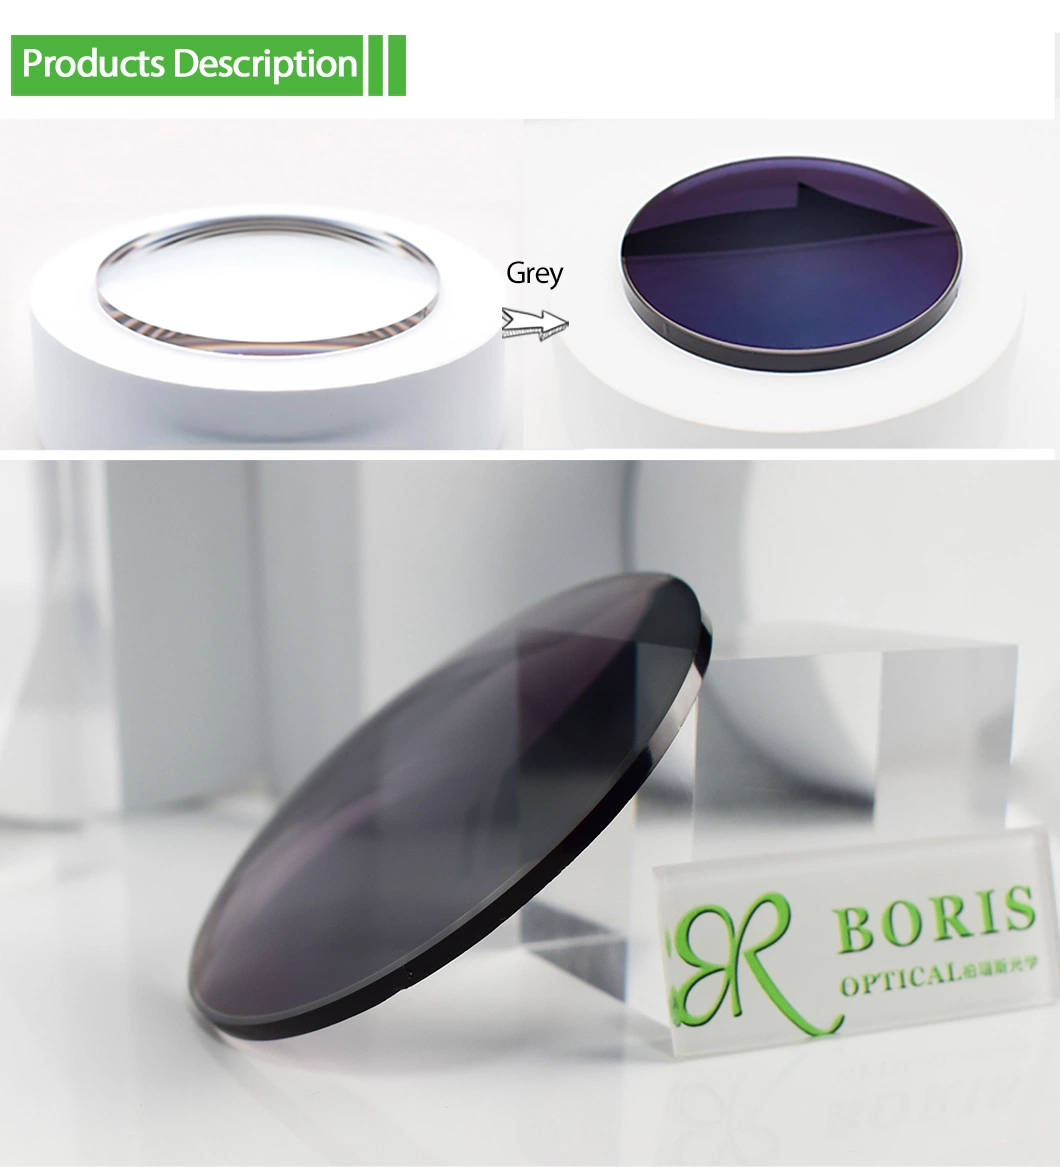 1.71 Spin Photochromic Grey Hmc Optical Lenses Eyewear